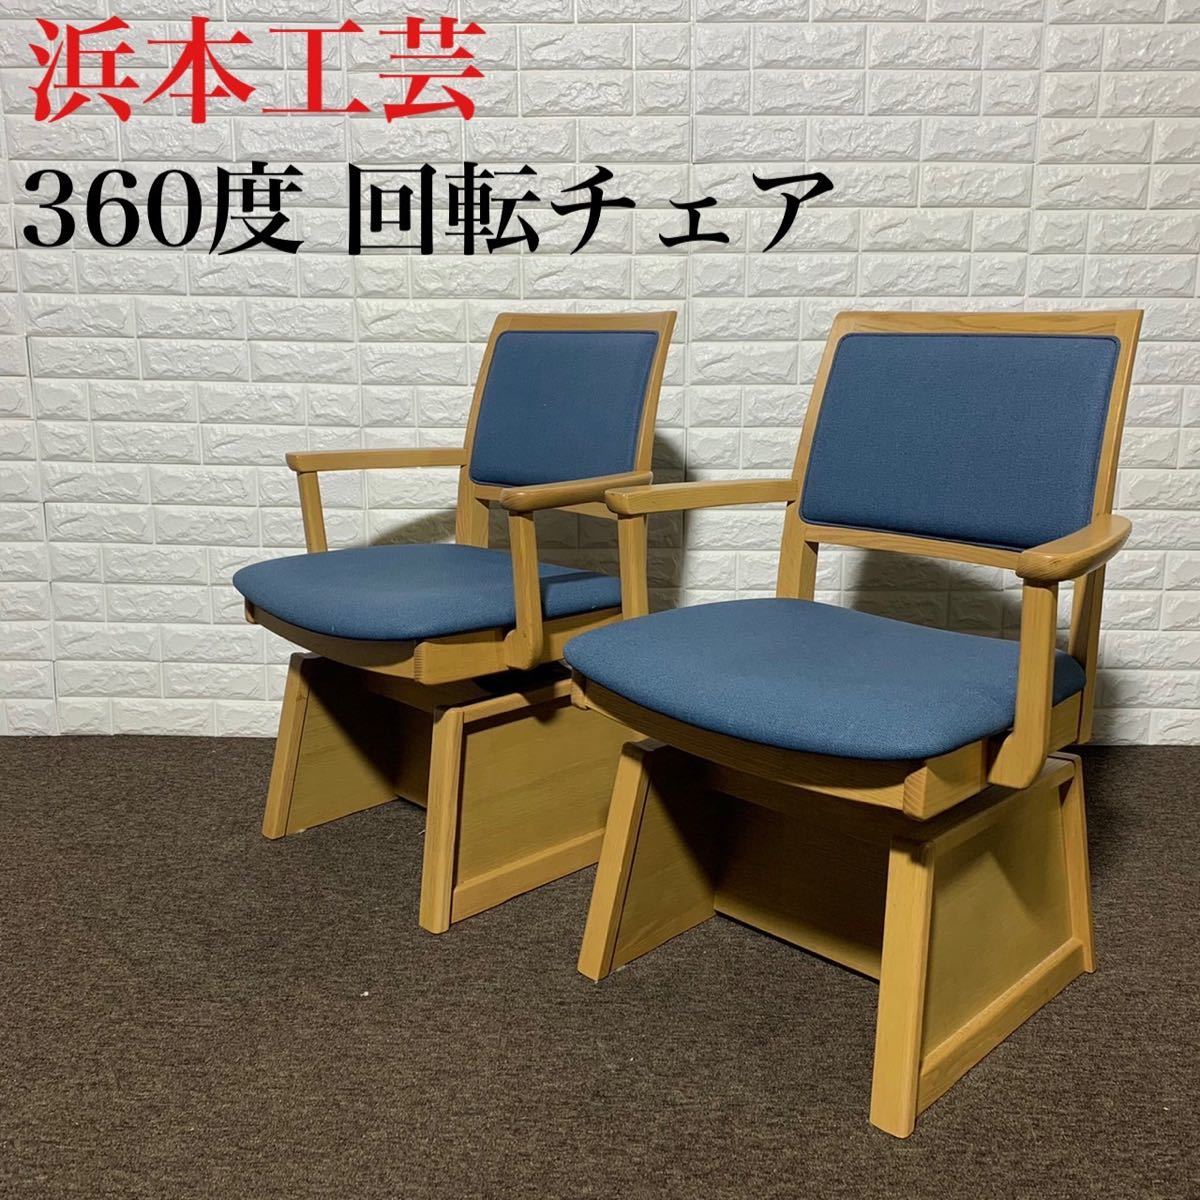 浜本工芸 チェア 回転 360度 高級 おしゃれ 椅子 家具 k0089 pds.com.py